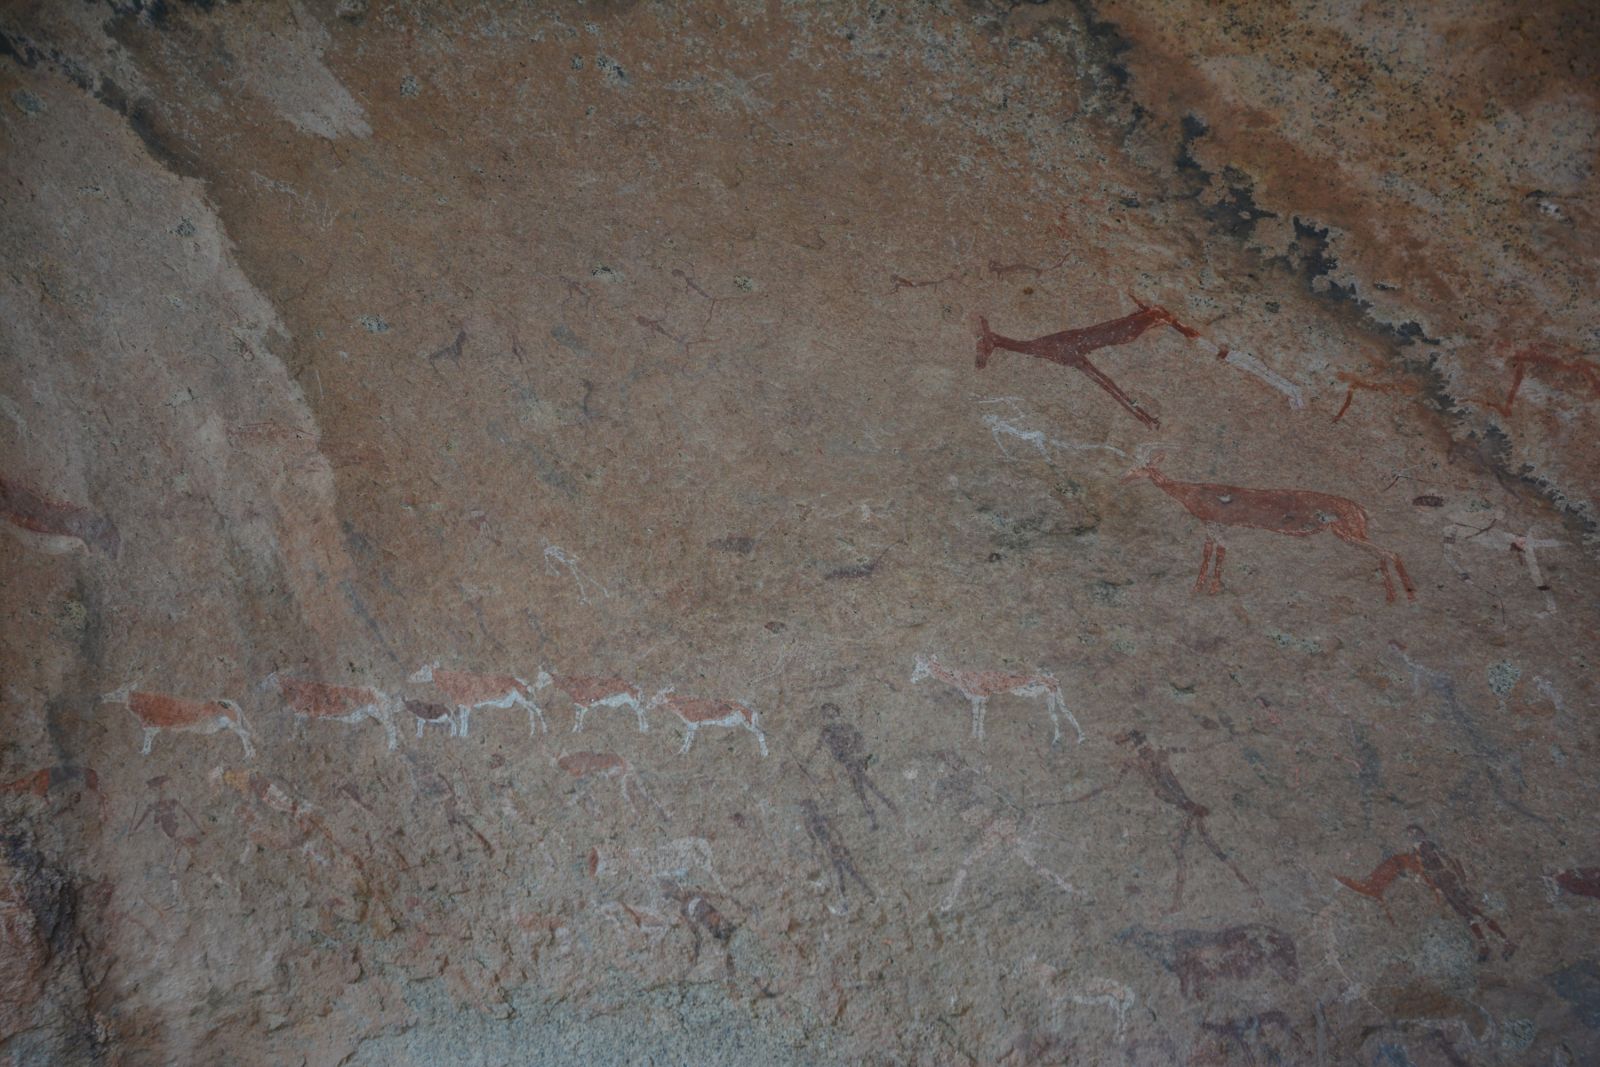 Das Alter der Höhlenmalereien der White Lady wird auf ca. 2000-4000 Jahre geschätzt. Zu sehen sind die Abbilder verschiedener Tiere. Unterschiedliche Interpretationen besagen, dass die Hauptfigur entweder weiblichen oder männlichen Geschlechts sei.